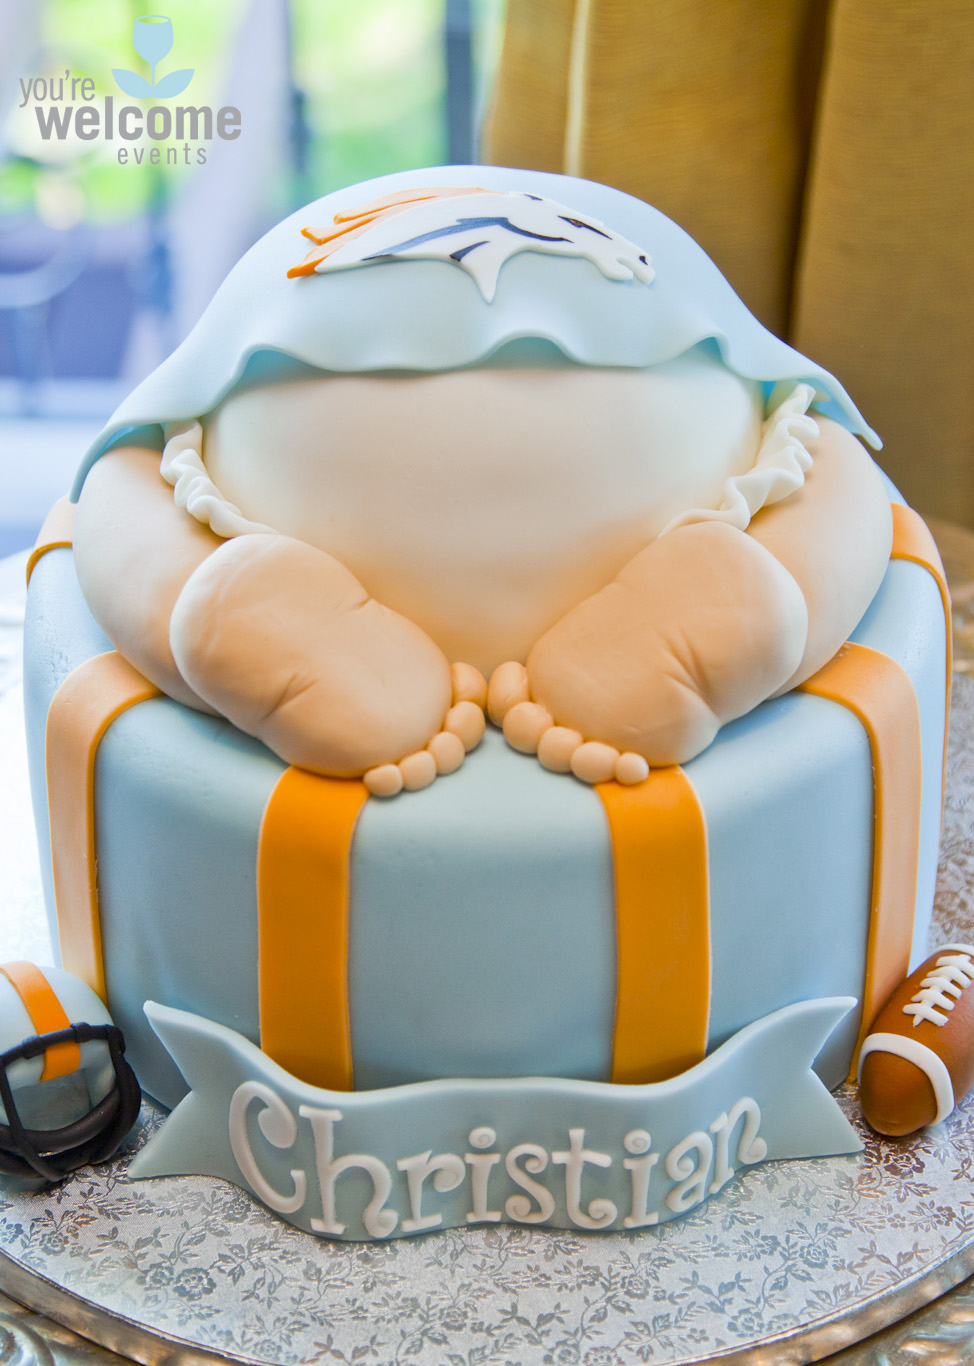 Baby Shower Cake with Denver Broncos Logo